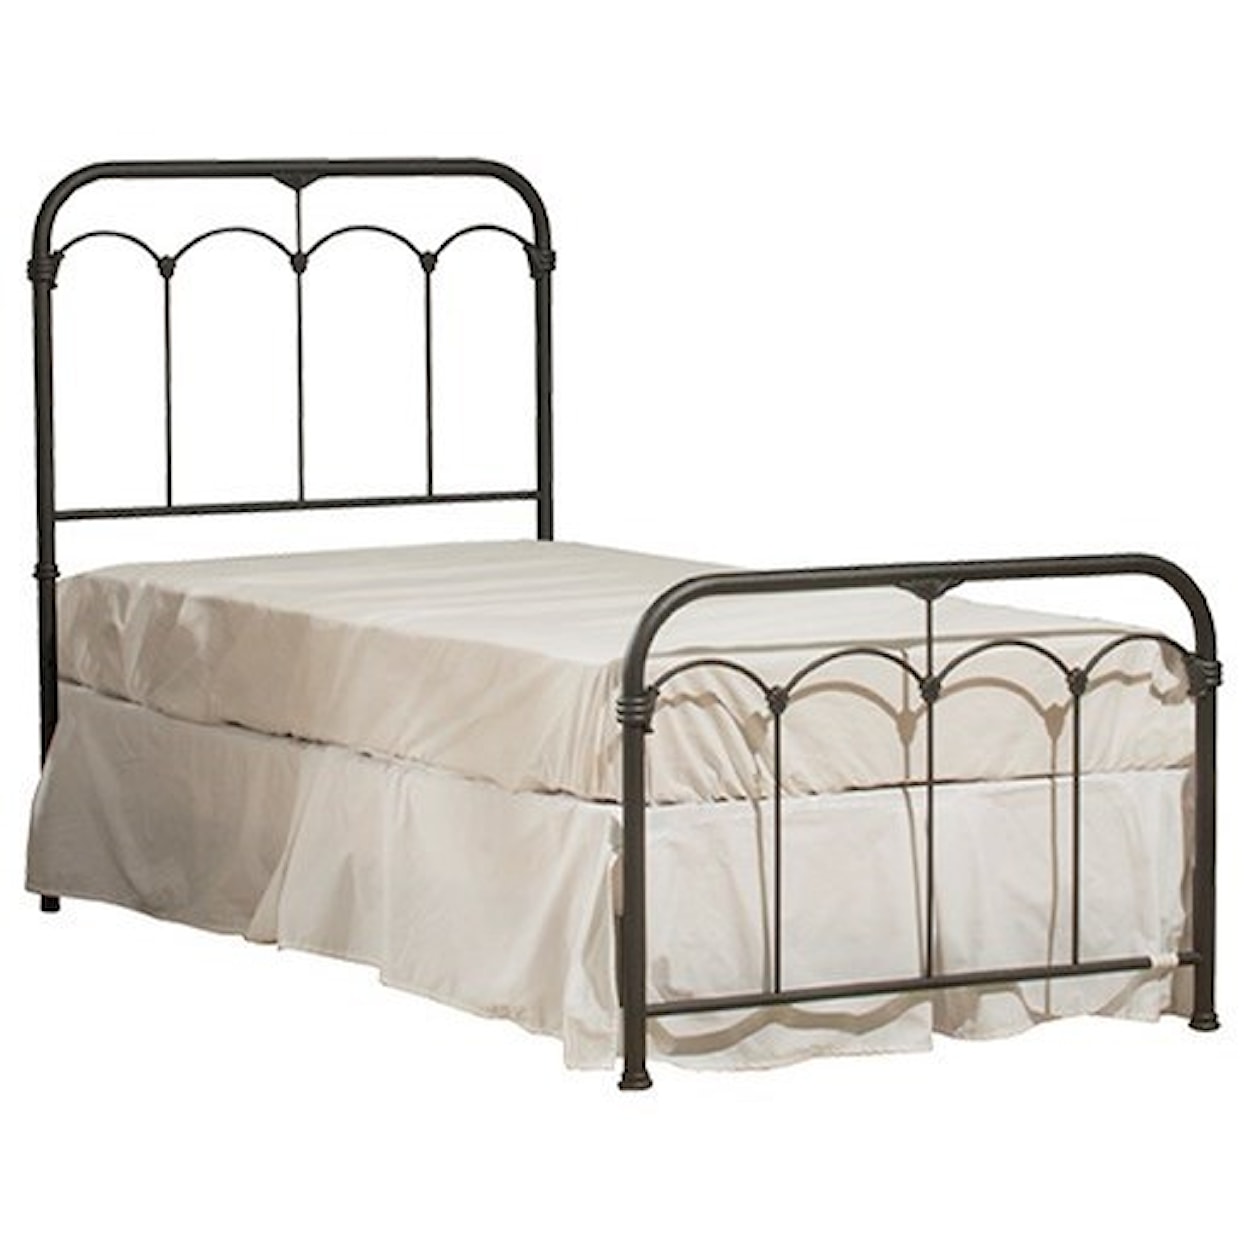 Hillsdale Jocelyn Queen Size Metal Bed